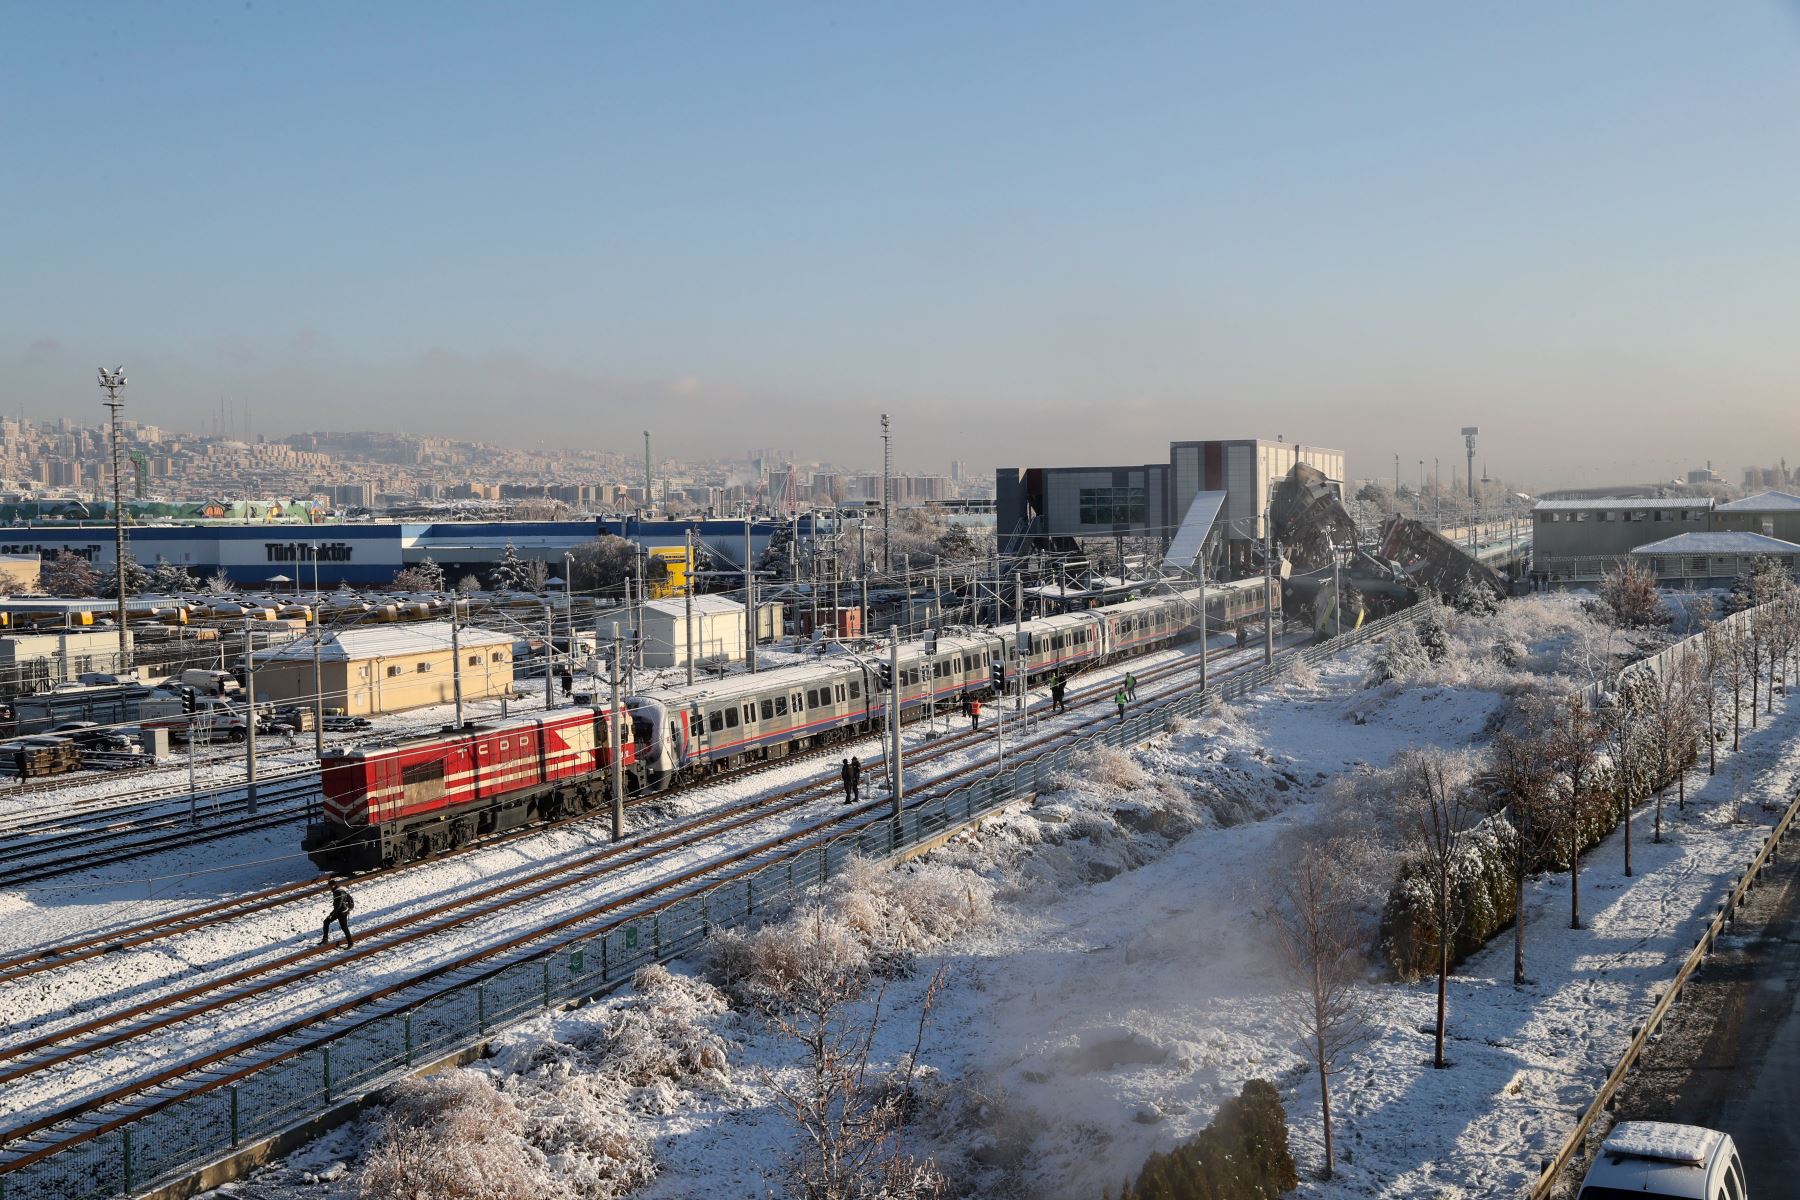 Bomberos y médicos intentan rescatar a las víctimas después de que un tren de alta velocidad se estrellara contra una locomotora en Ankara, el 13 de diciembre de 2018. - Nueve personas murieron y casi 50 resultaron heridas en este accidente ferroviario.  AFP